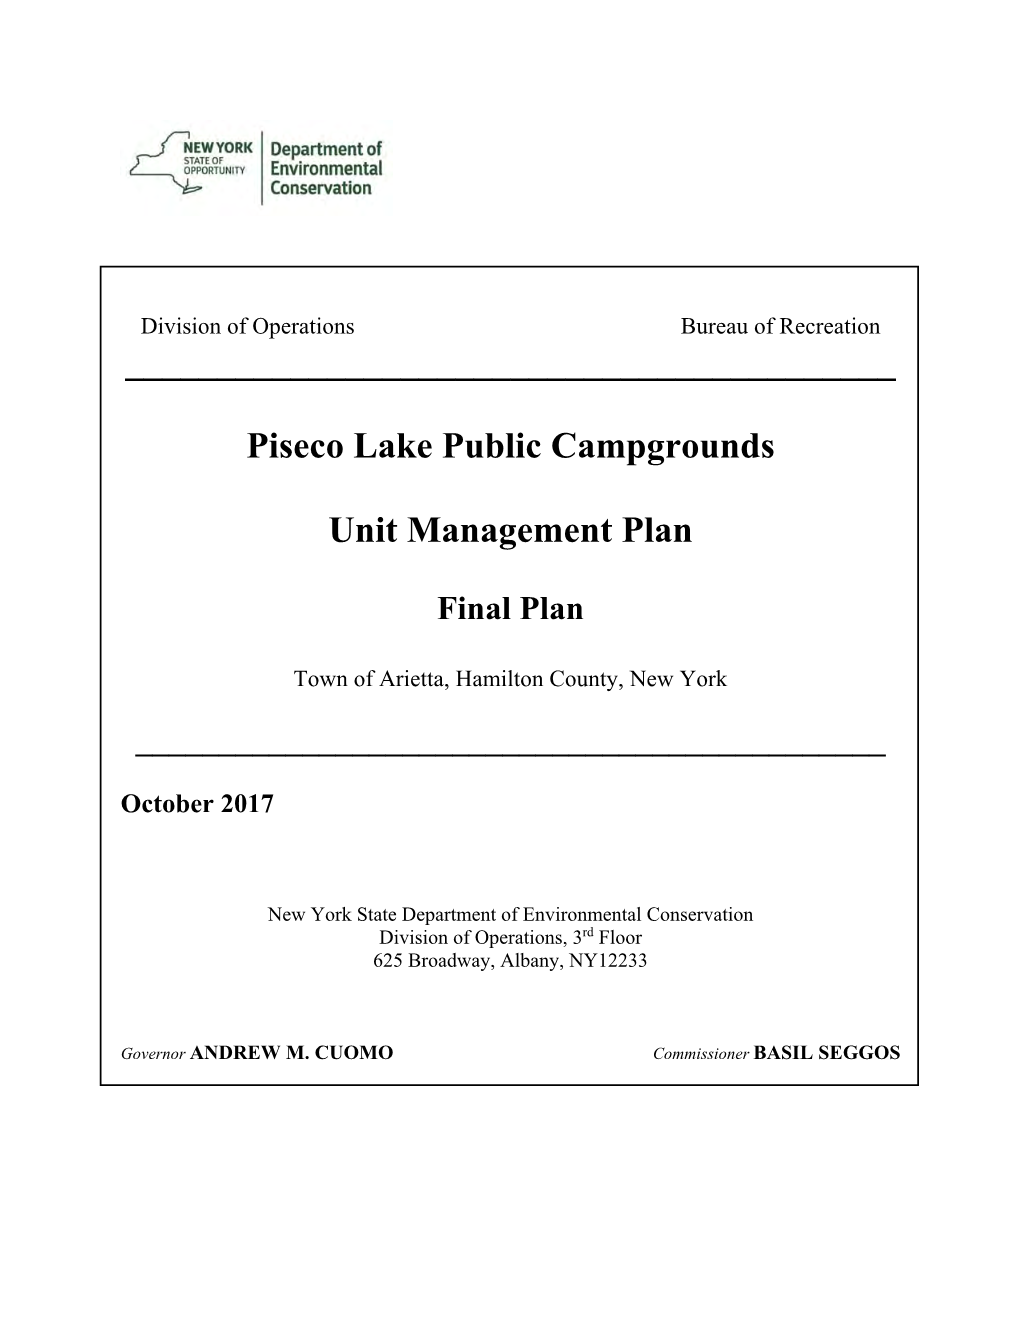 Piseco Lake Public Campgrounds Unit Management Plan